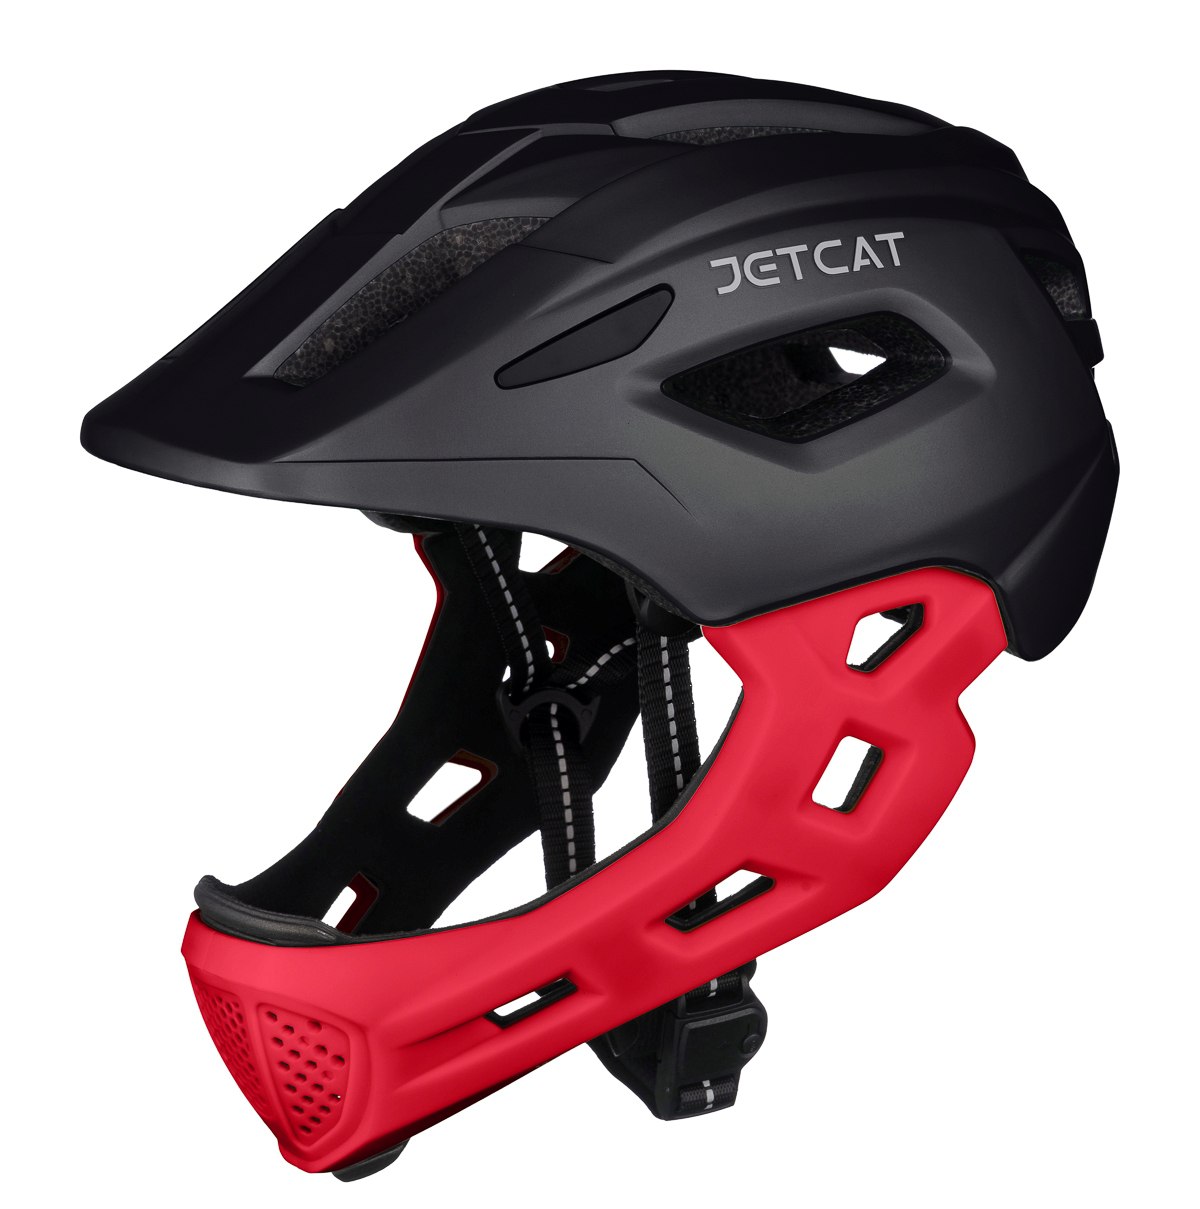 Шлем защитный детский JetCat Start Black/Red размер S 52-56 см велосипедный роликовые коньки раздвижные alpha caprice шлем набор защиты в сумке ac sporter black s